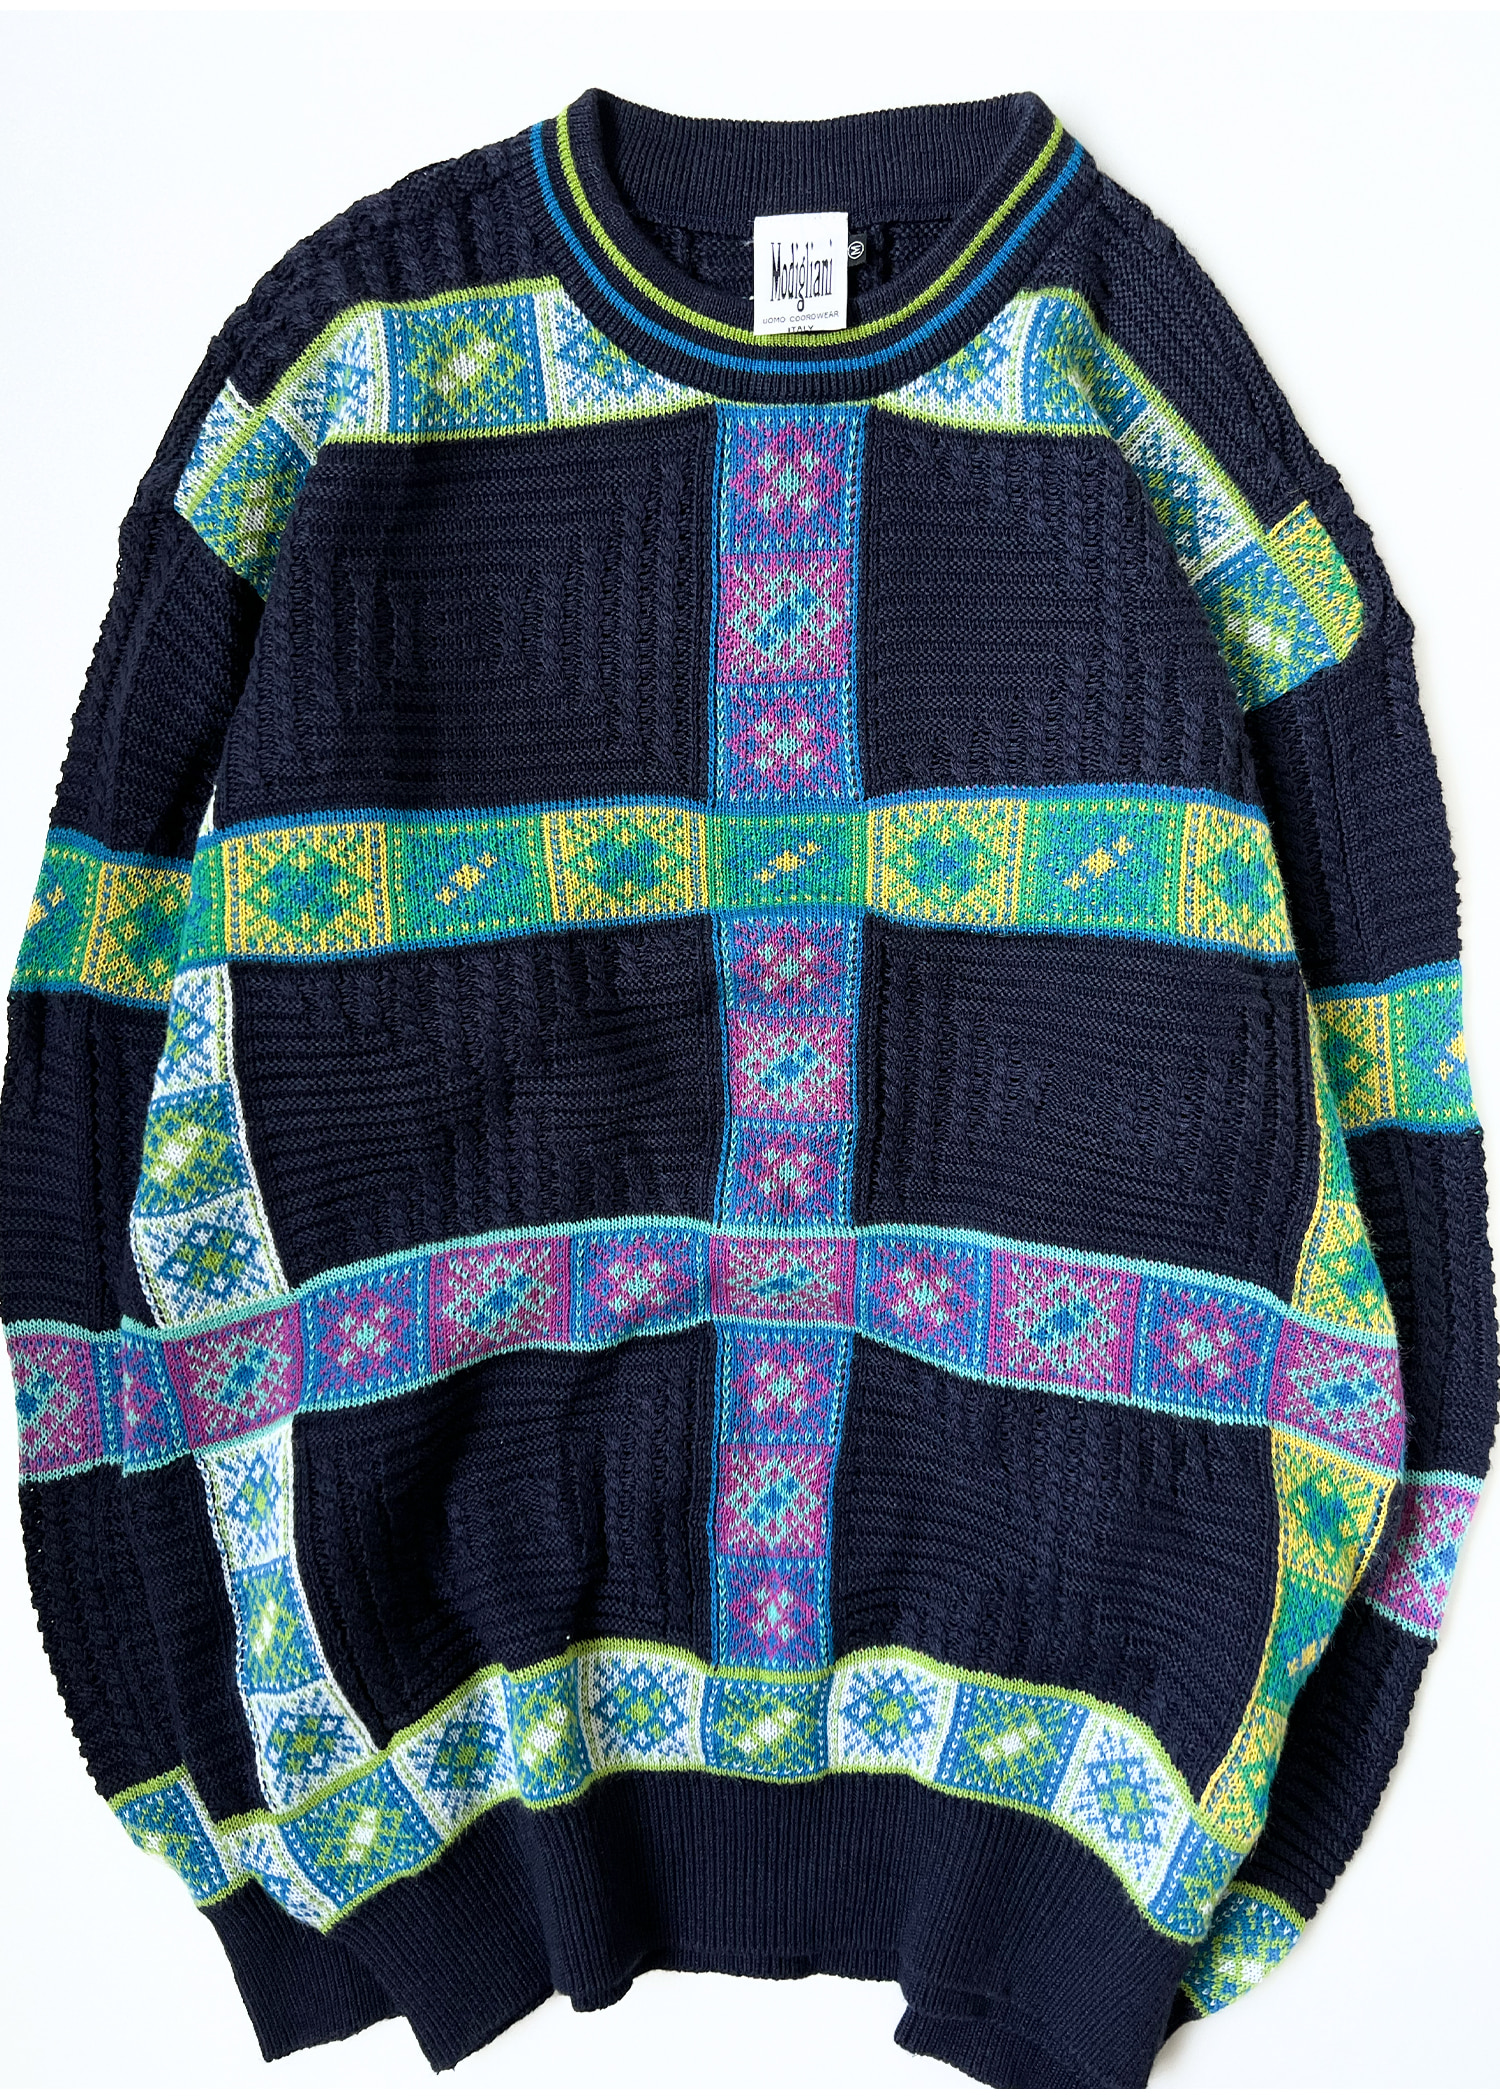 Modigliani patterned knit